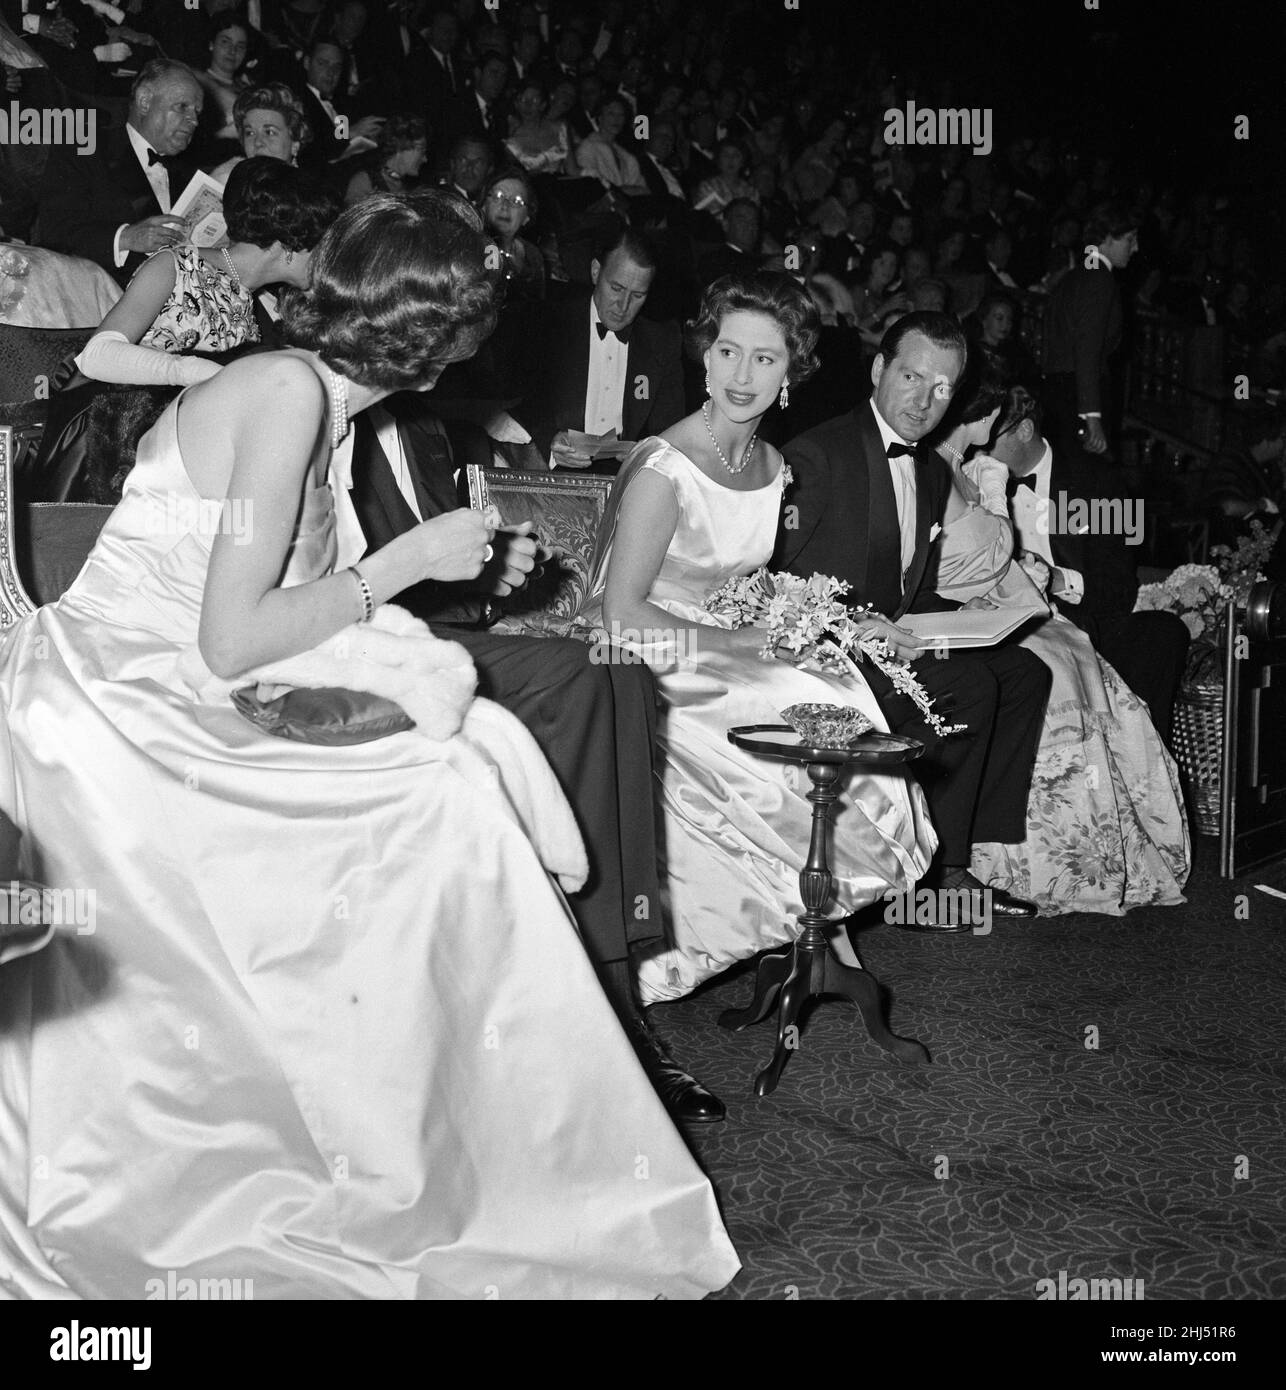 Il Royal World Premiere del film "Look Back in Anger" all'Empire Theatre, Leicester Square, Londra. Nella foto, la principessa Margaret prende posto nell'auditorium. 28th maggio 1959. Foto Stock